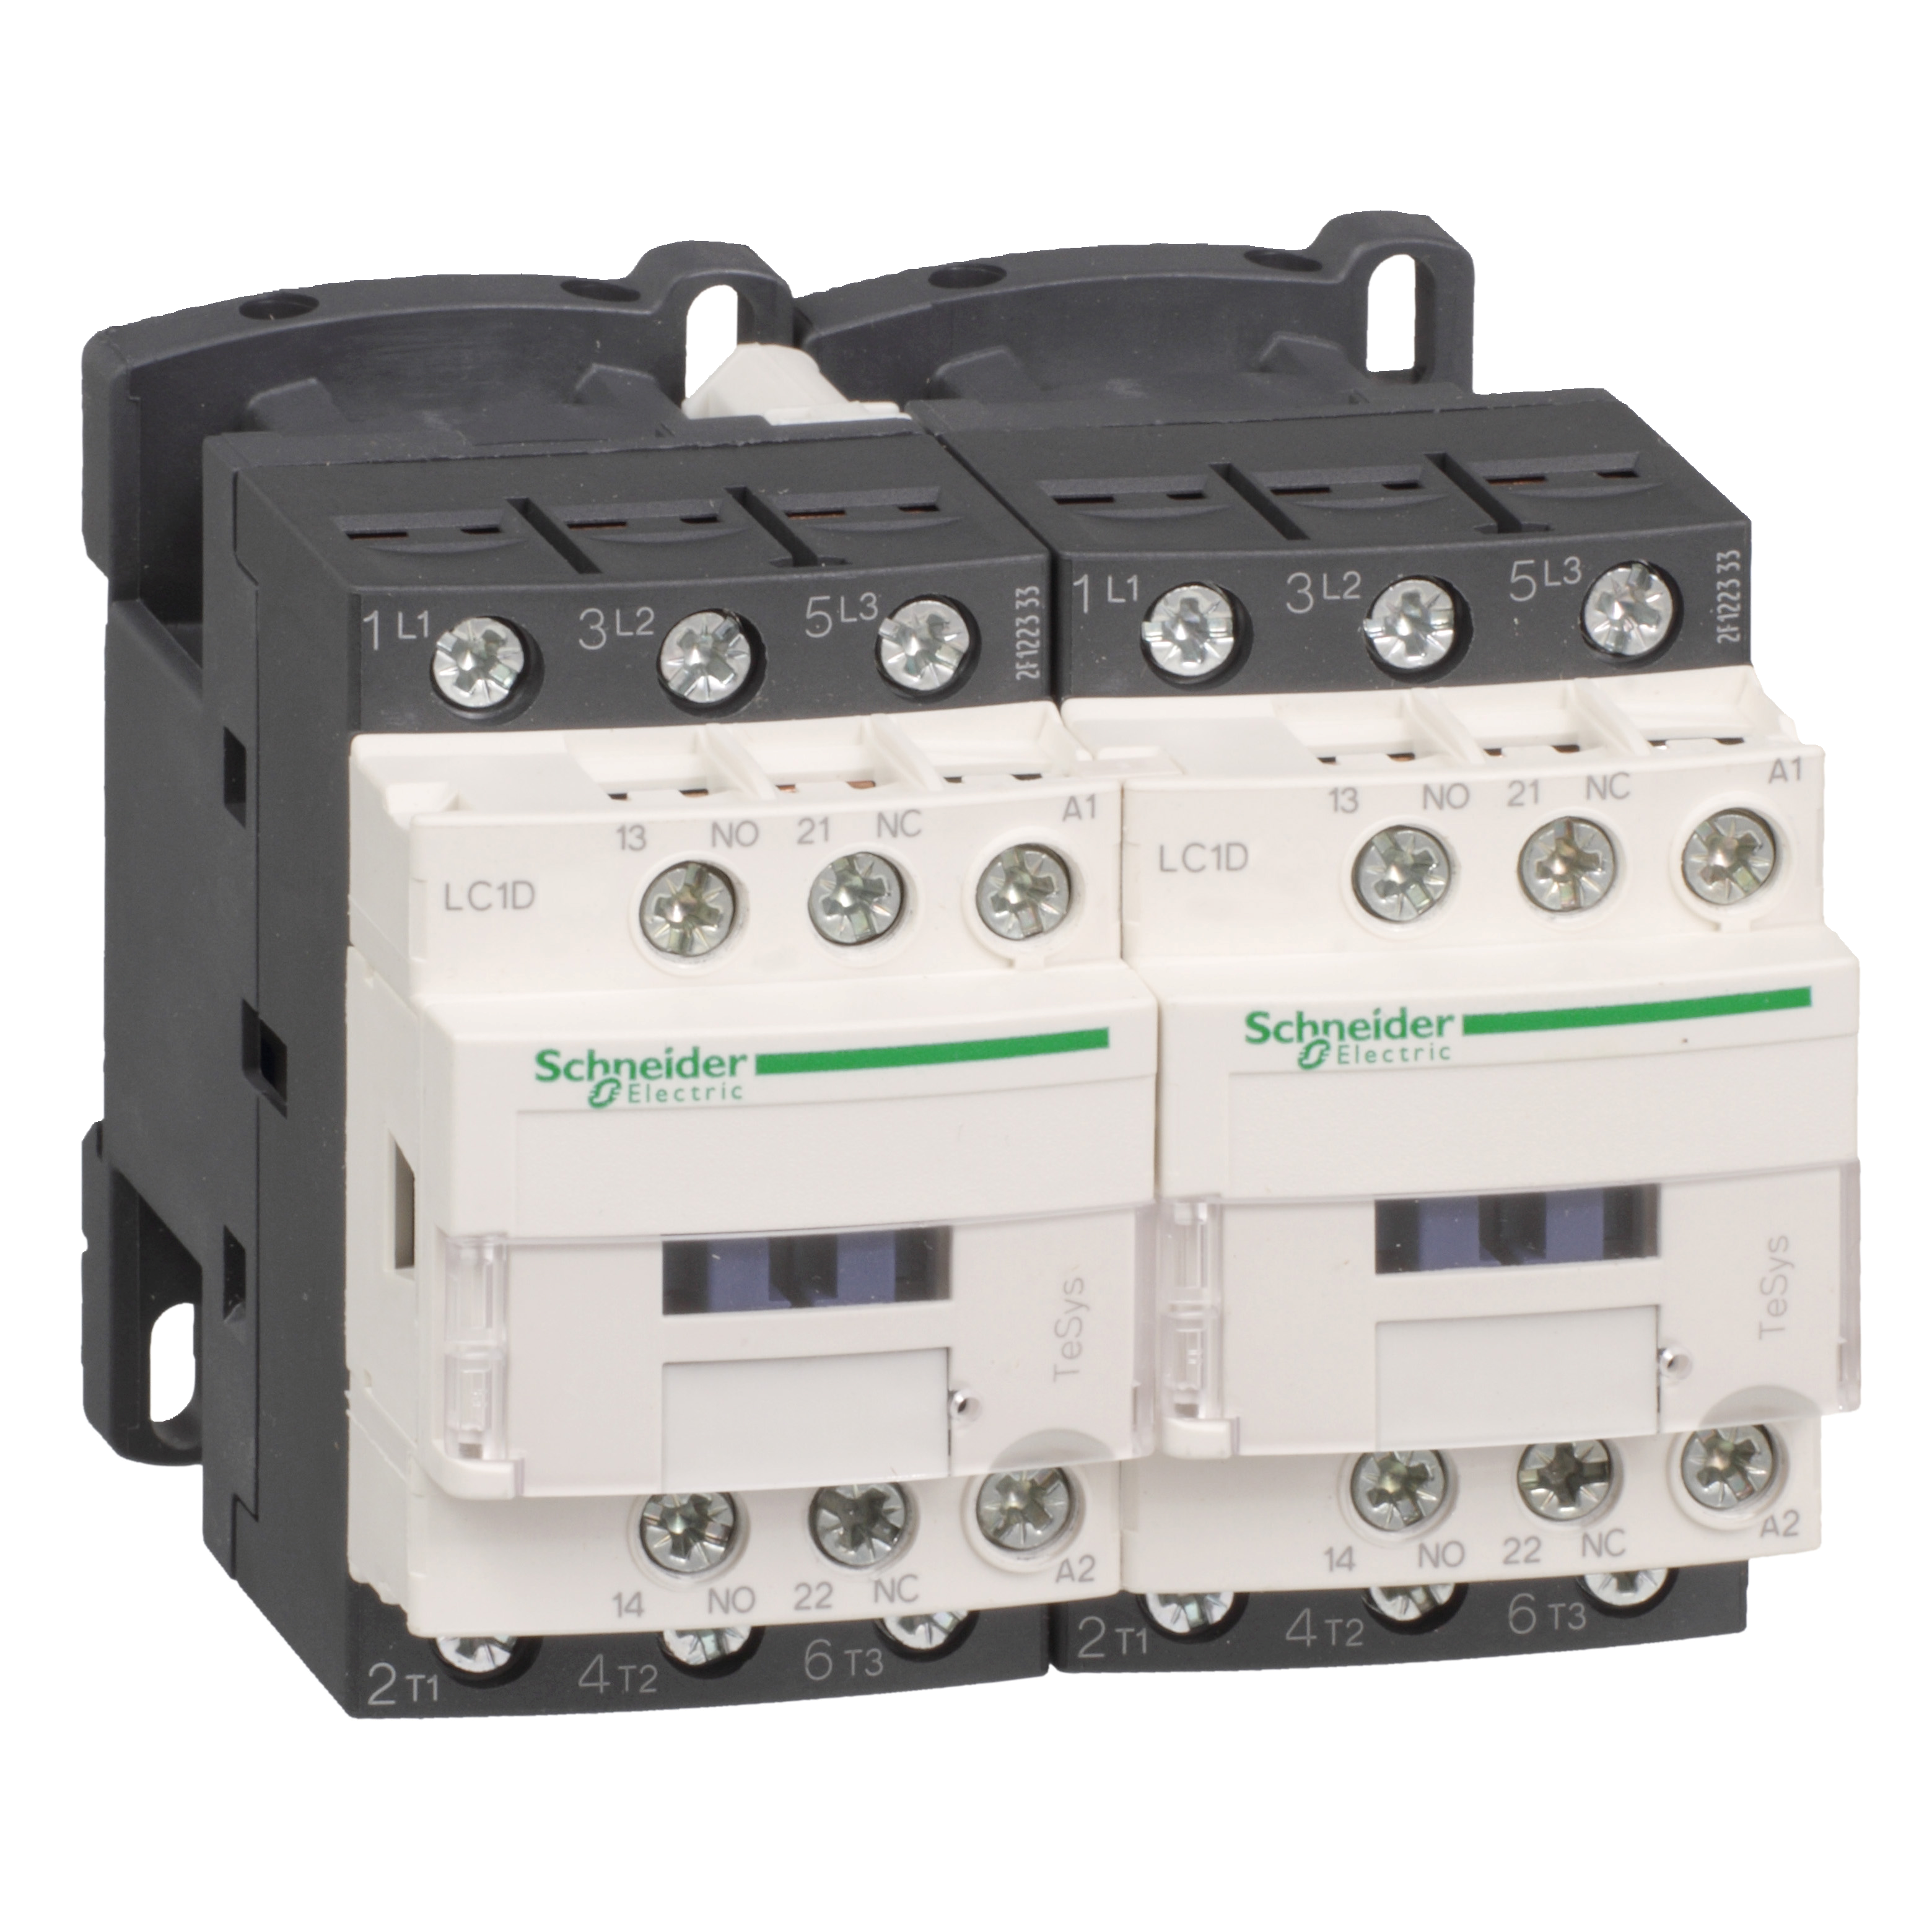 Kontaktorski par za reverziranje, 9A (AC-3), 3P, kalem 110V AC, 1NC+1NO, blokada mehanicka bez elektricne 